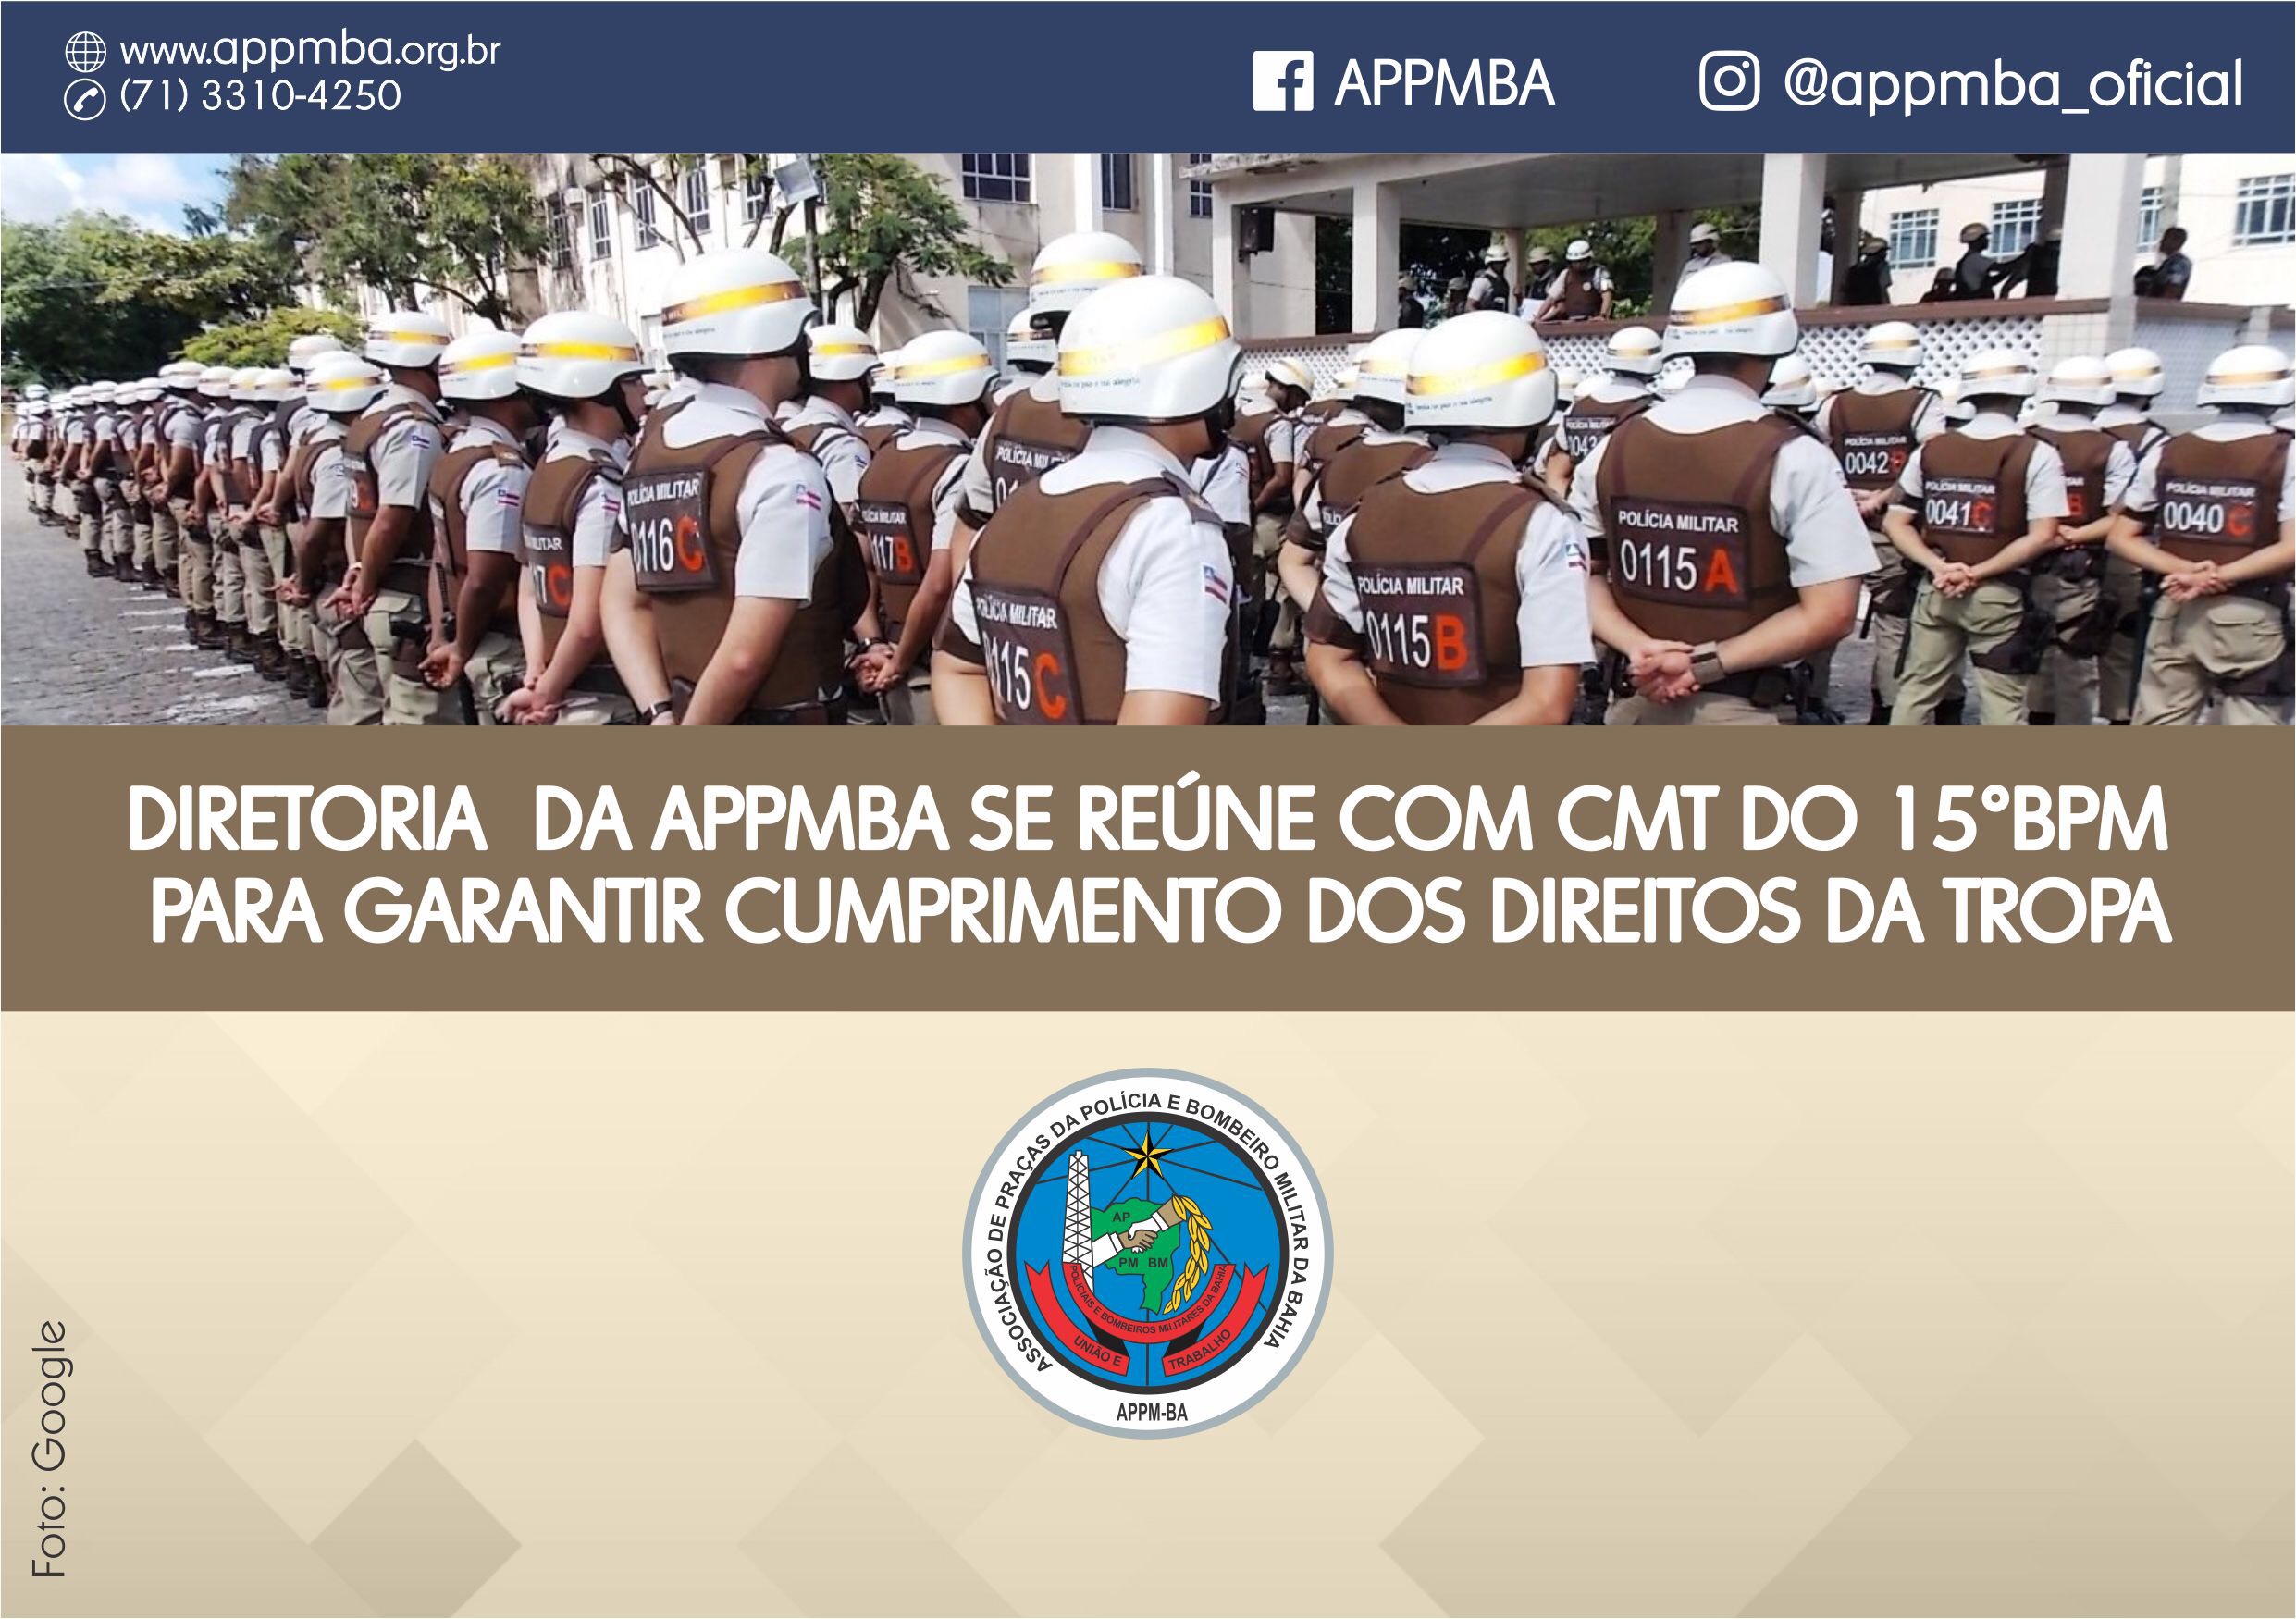 Diretoria da APPMBA se reúne com Cmt do 15º BPM para garantir cumprimento dos direitos da tropa